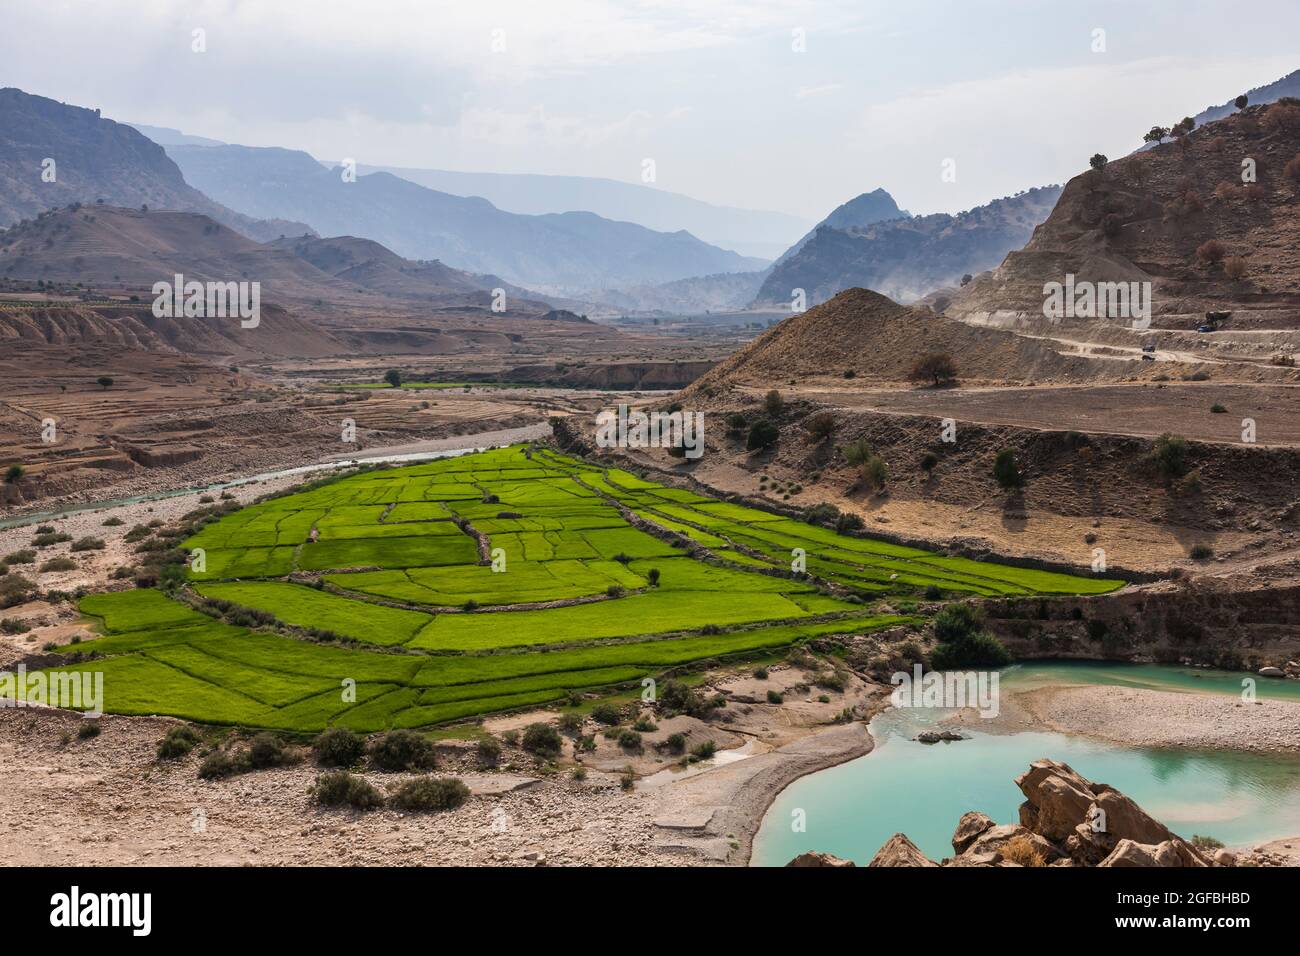 Rivière bordeaux et champ de riz dans les montagnes Zagros, route 63 près de Kalat, Kohgiluyeh et province de Boyer-Ahmad, Iran, Perse, Asie occidentale, Asie Banque D'Images